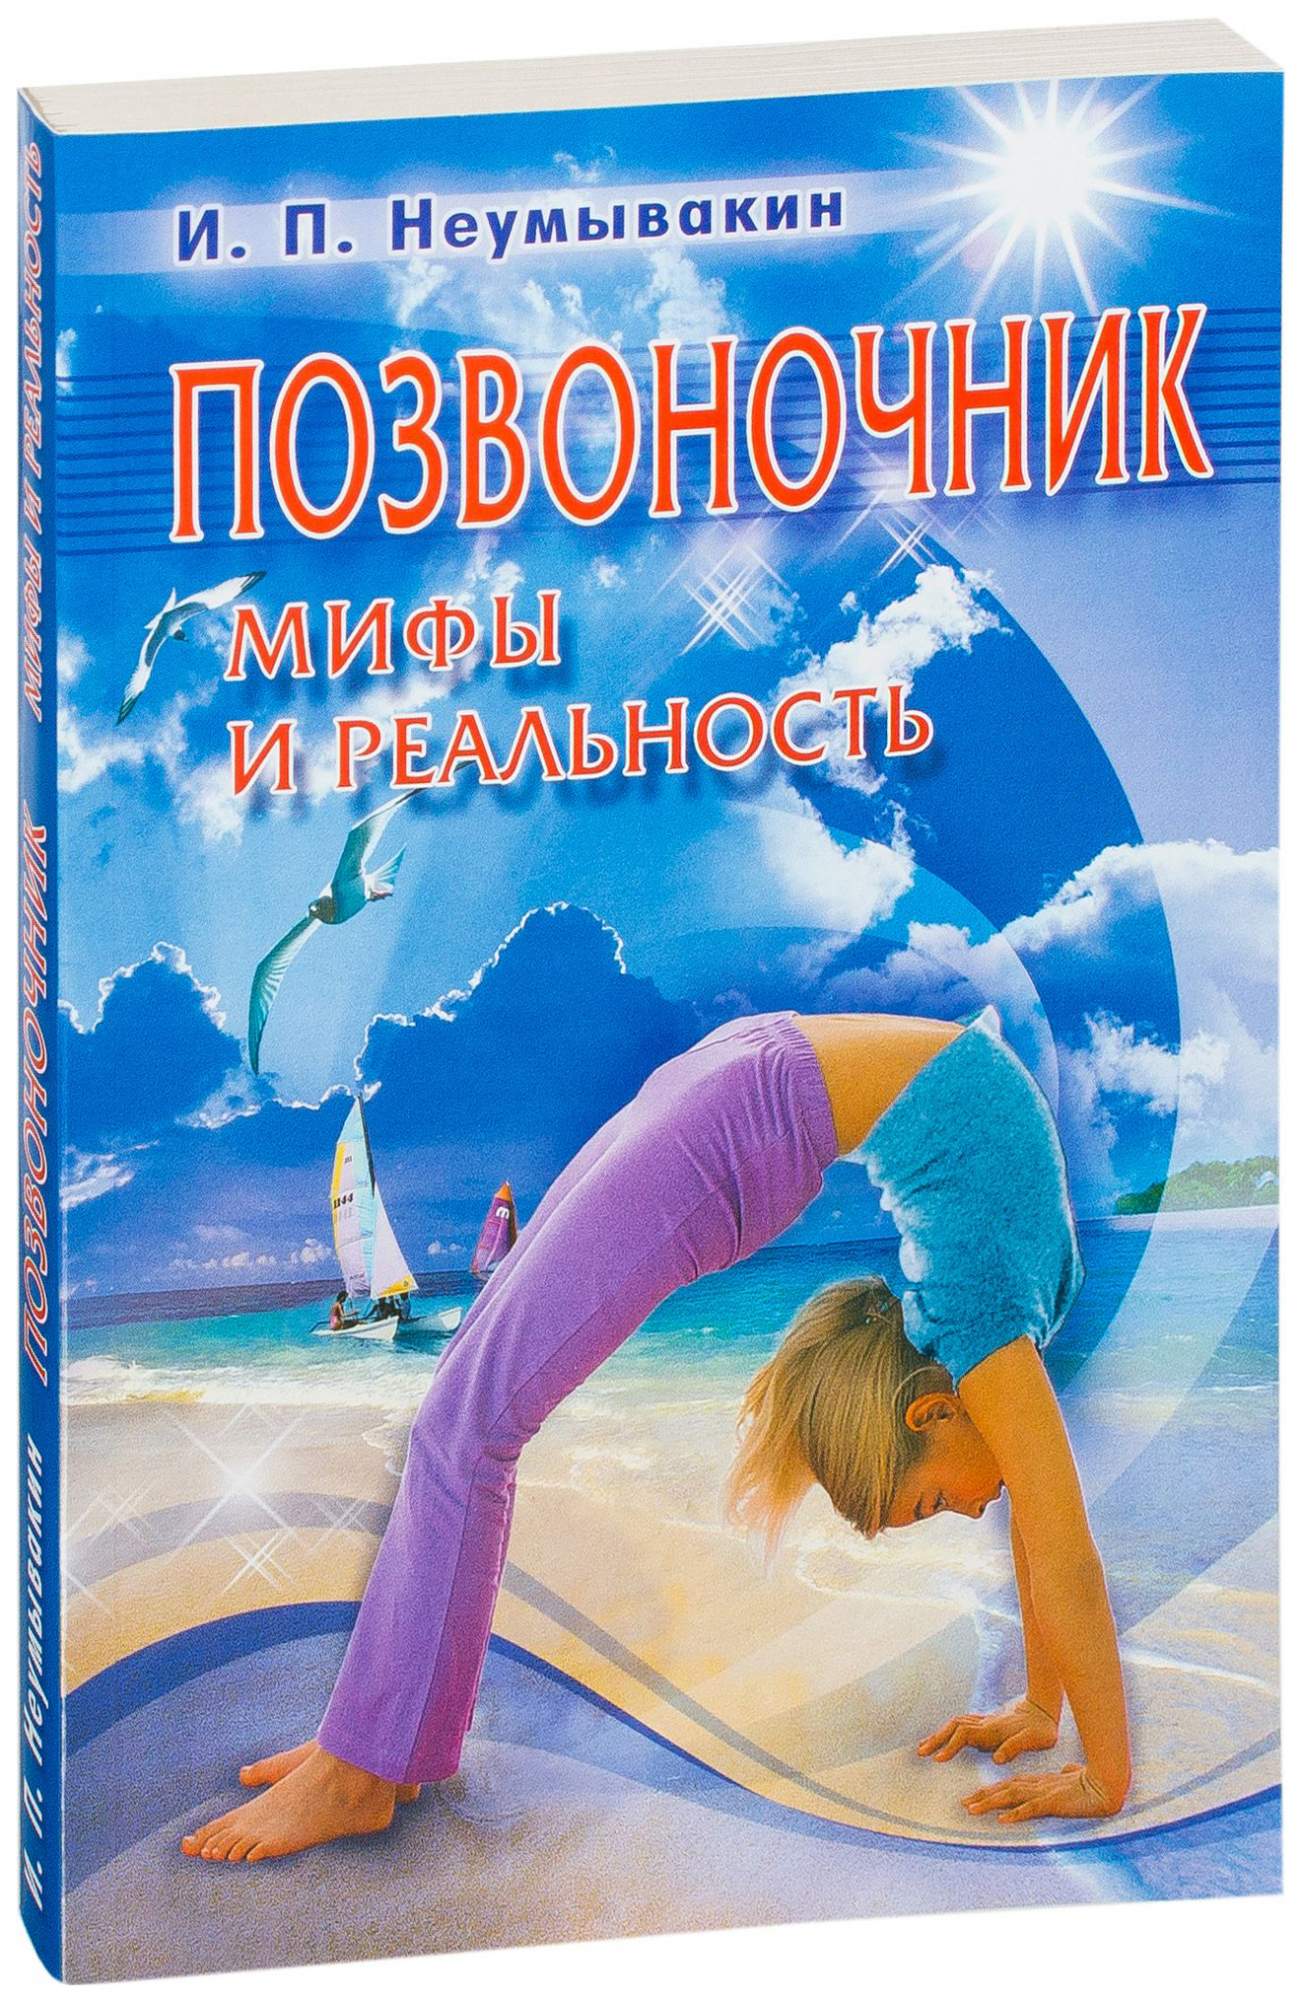 Книга Позвоночник Мифы и реальность - купить спорта, красоты и здоровья в интернет-магазинах, цены в Москве на СберМегаМаркет